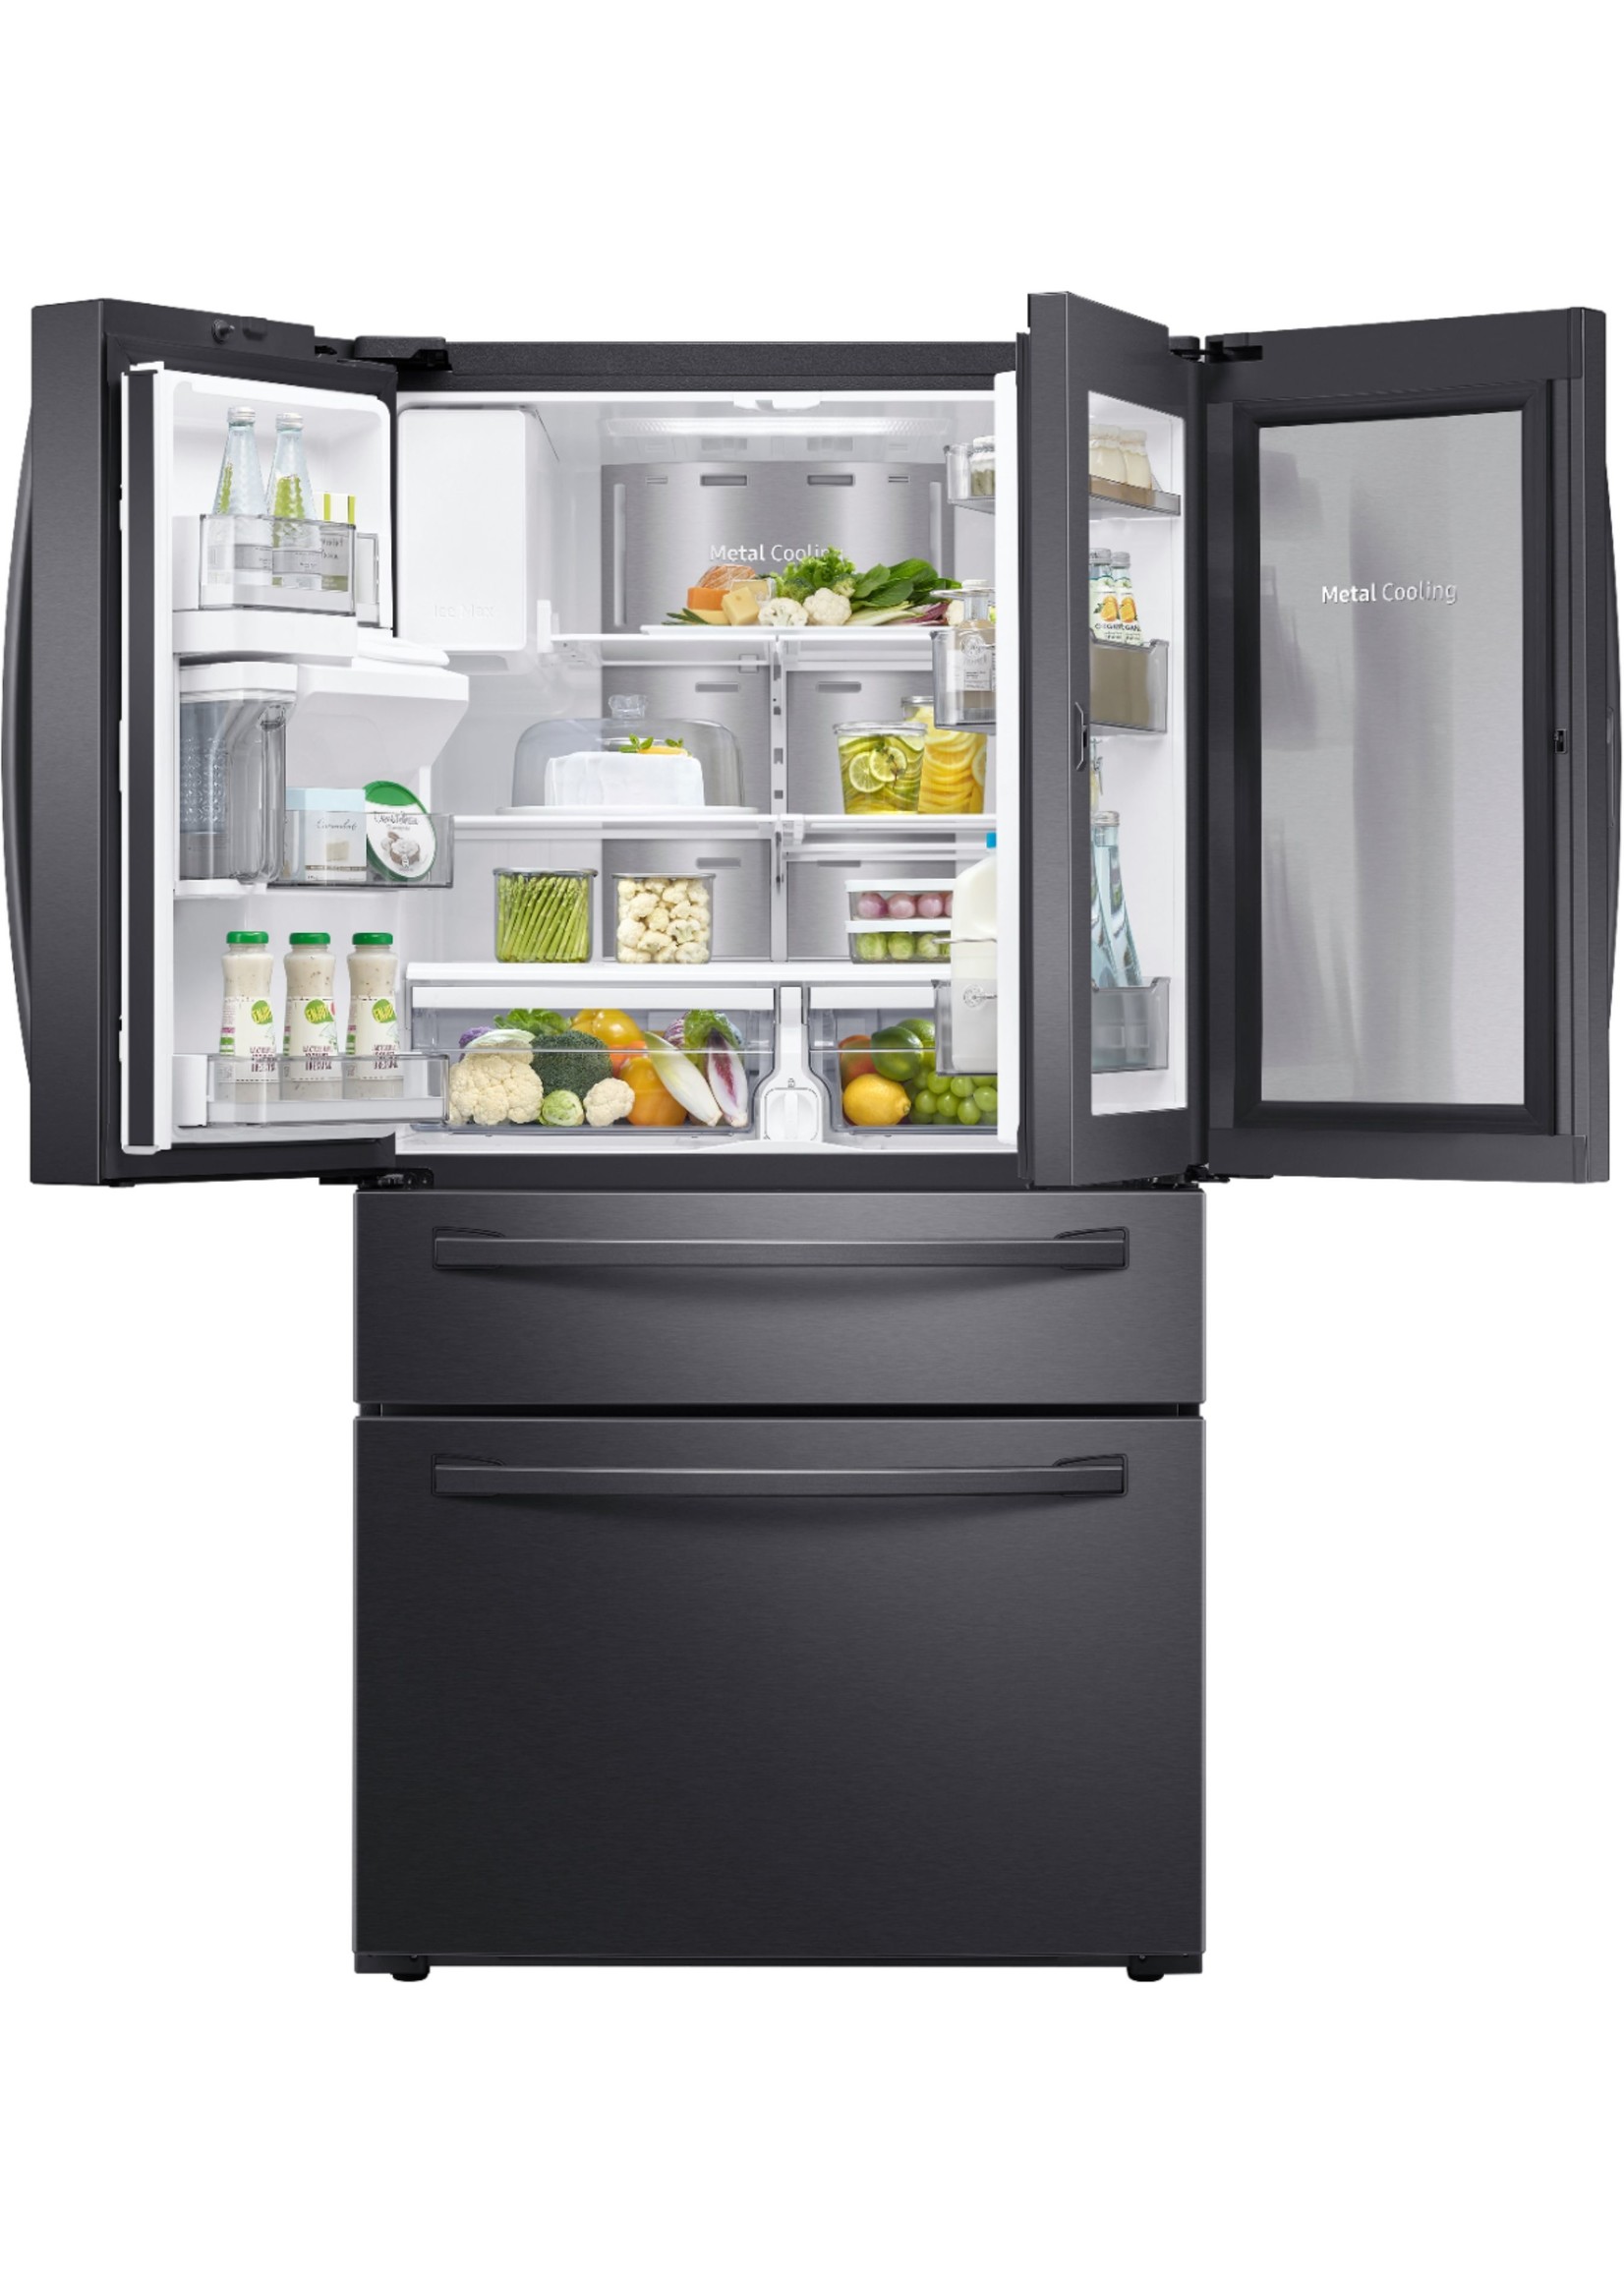 Samsung 27.8 cu. ft. Food Showcase 4-Door French Door Refrigerator in Fingerprint Resistant Stainless Steel